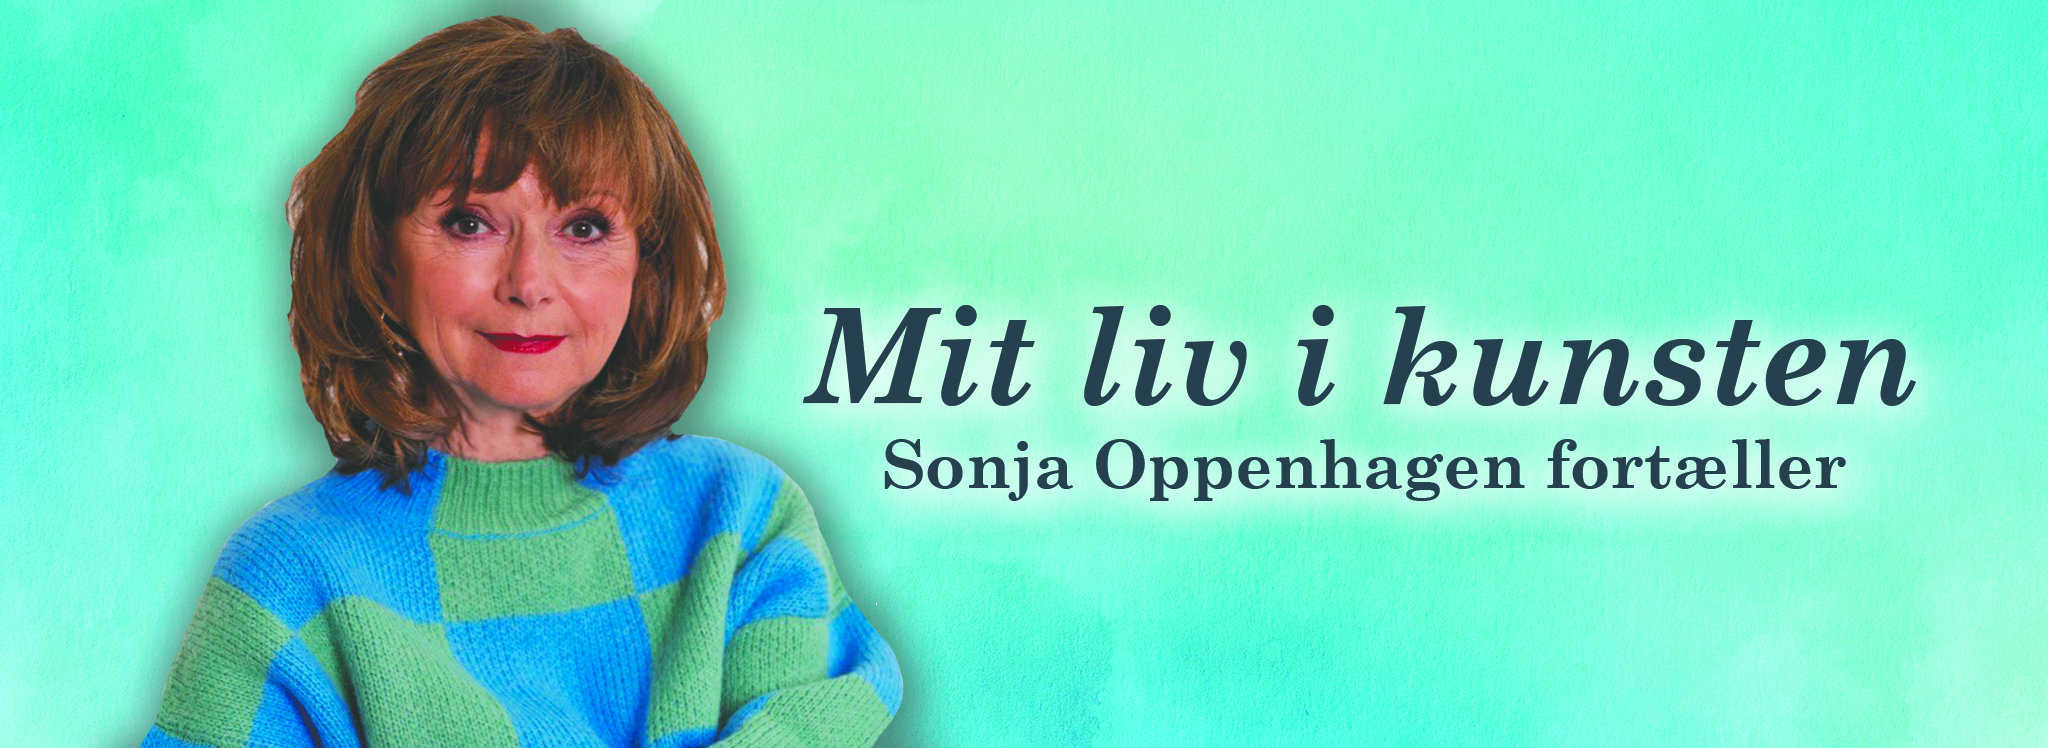 Sonja Oppenhagen foredrag banner